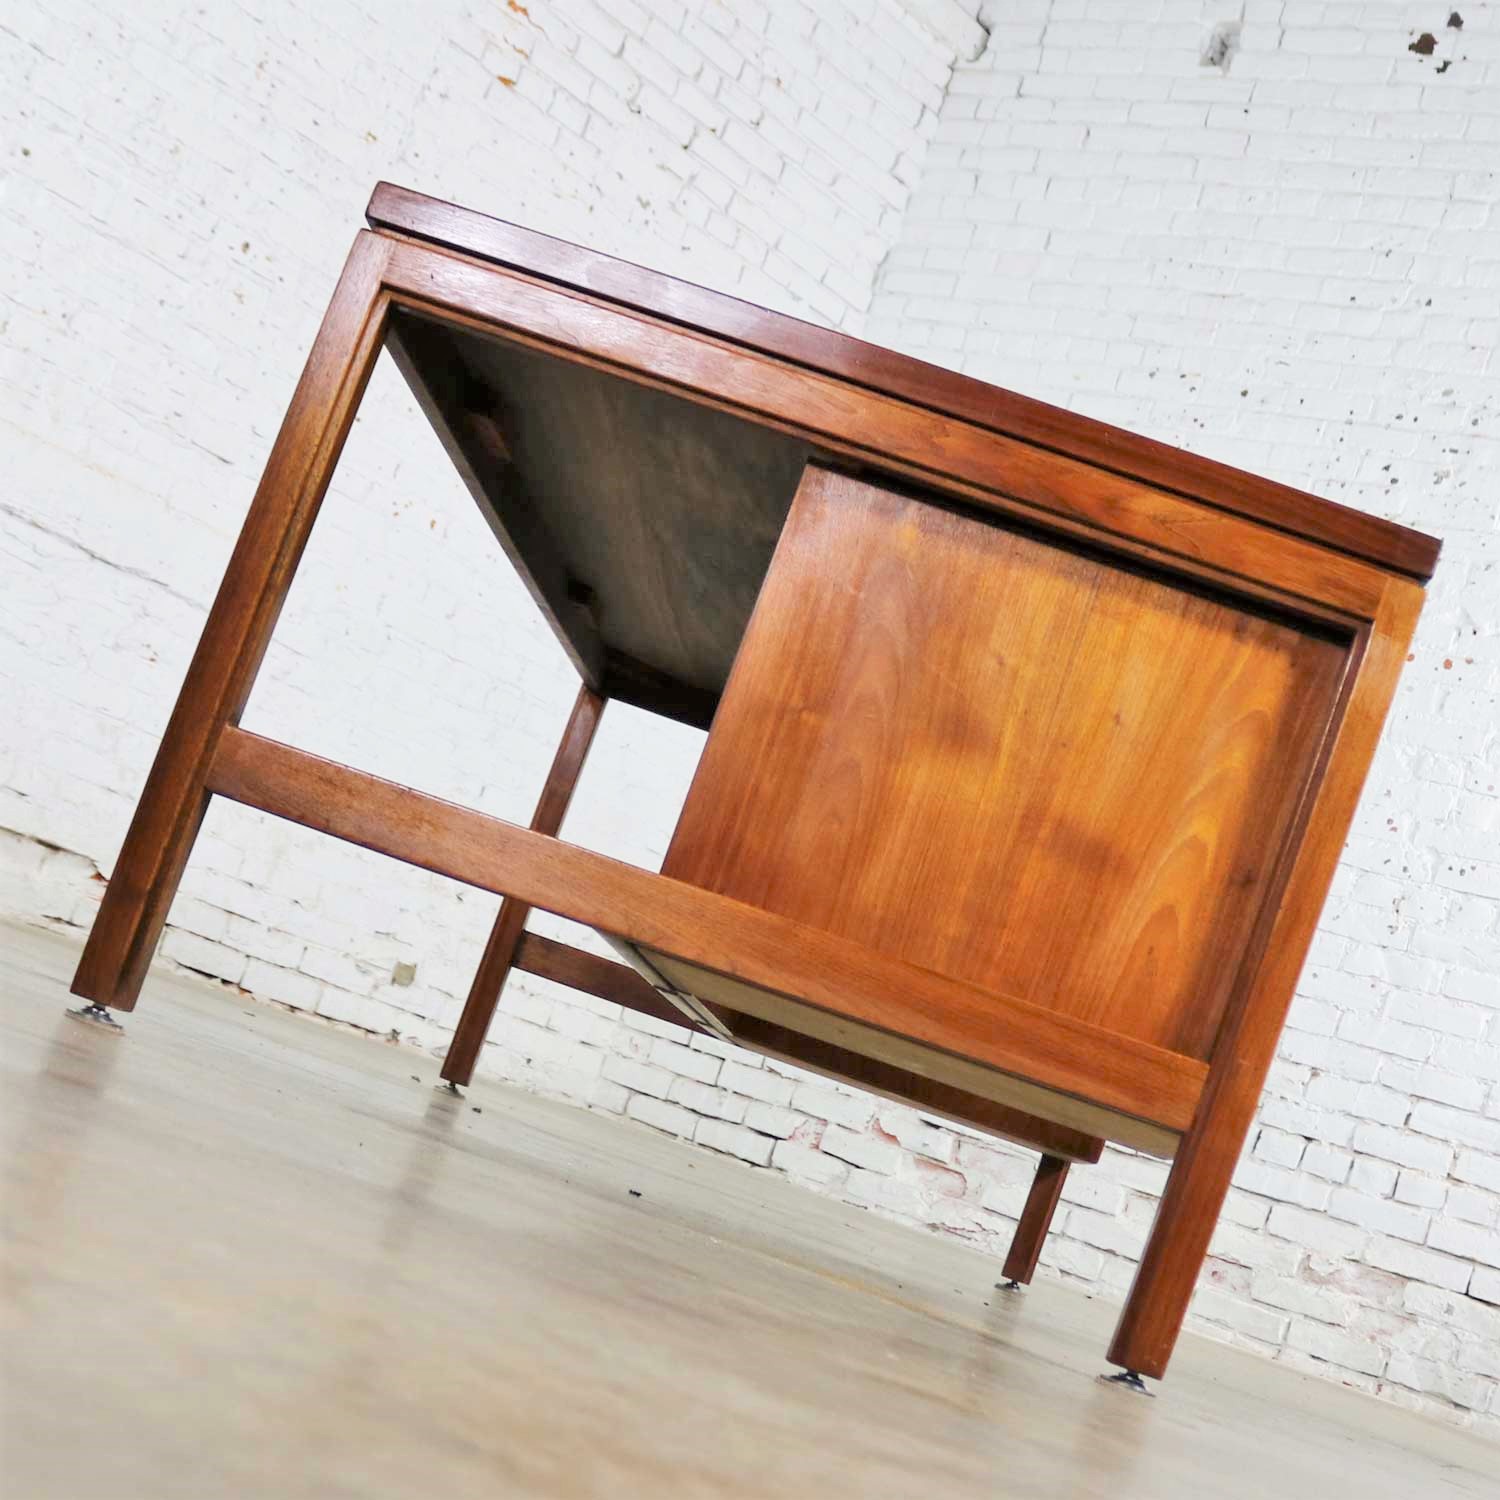 Scandinavian Modern Executive Desk in Walnut by Jens Risom for Risom Designs